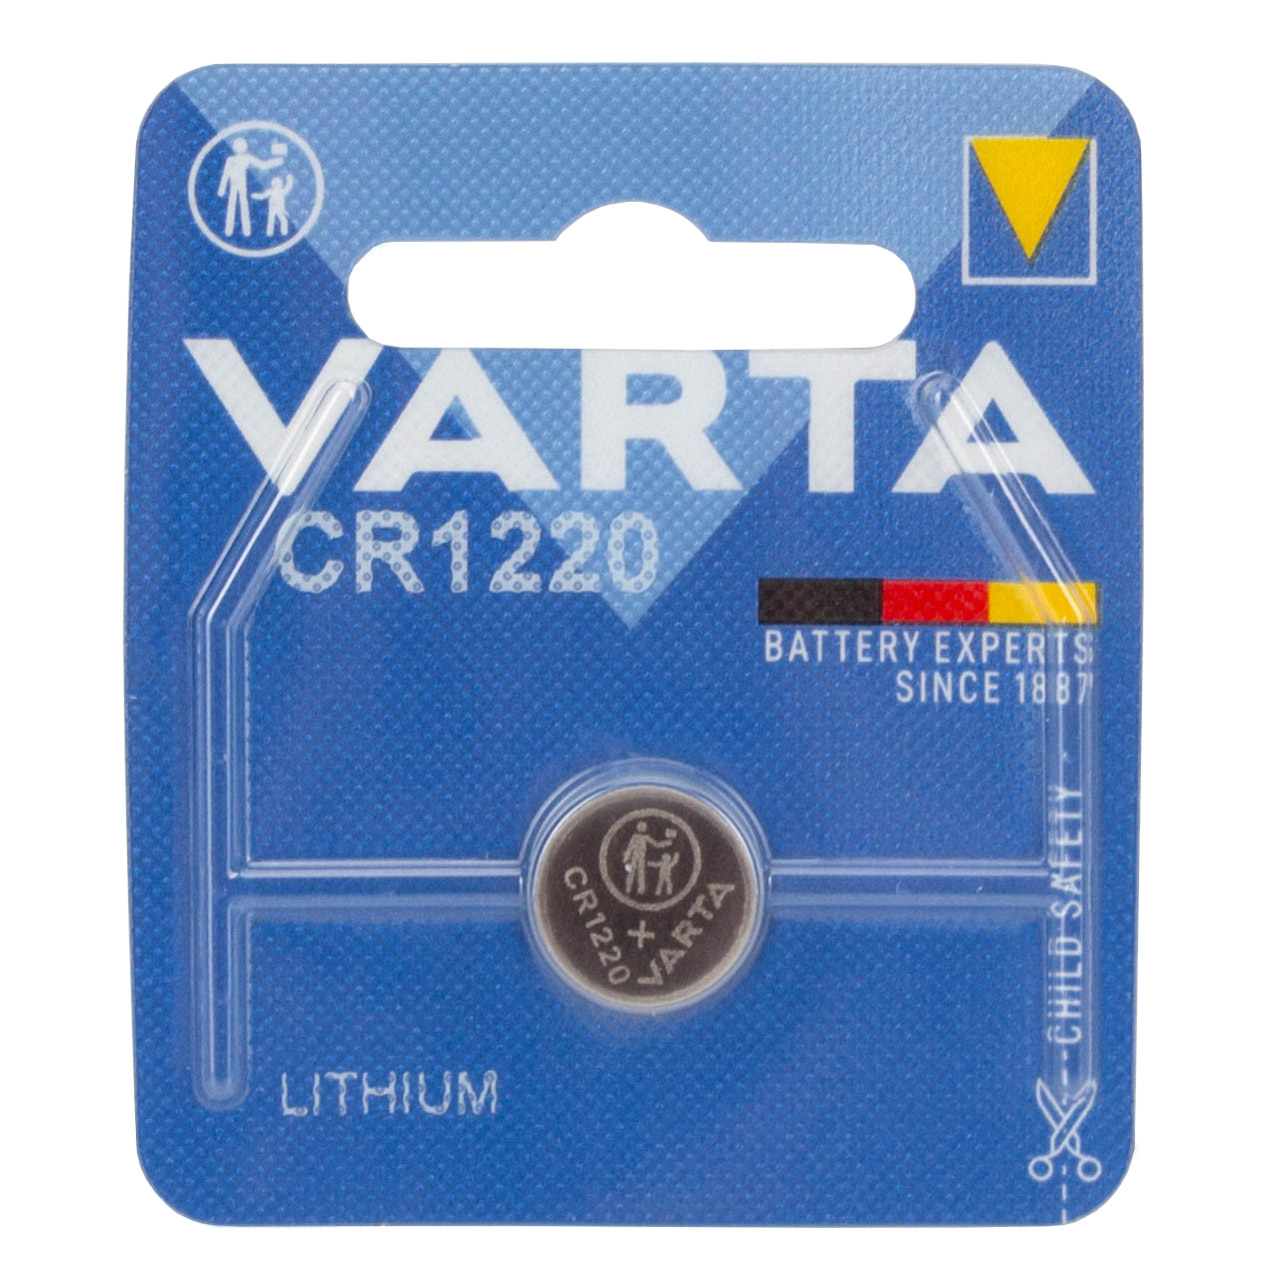 10x VARTA Lithium 3V CR1220 Knopfzelle Knopfbatterie Batterie (MHD 02.2033)